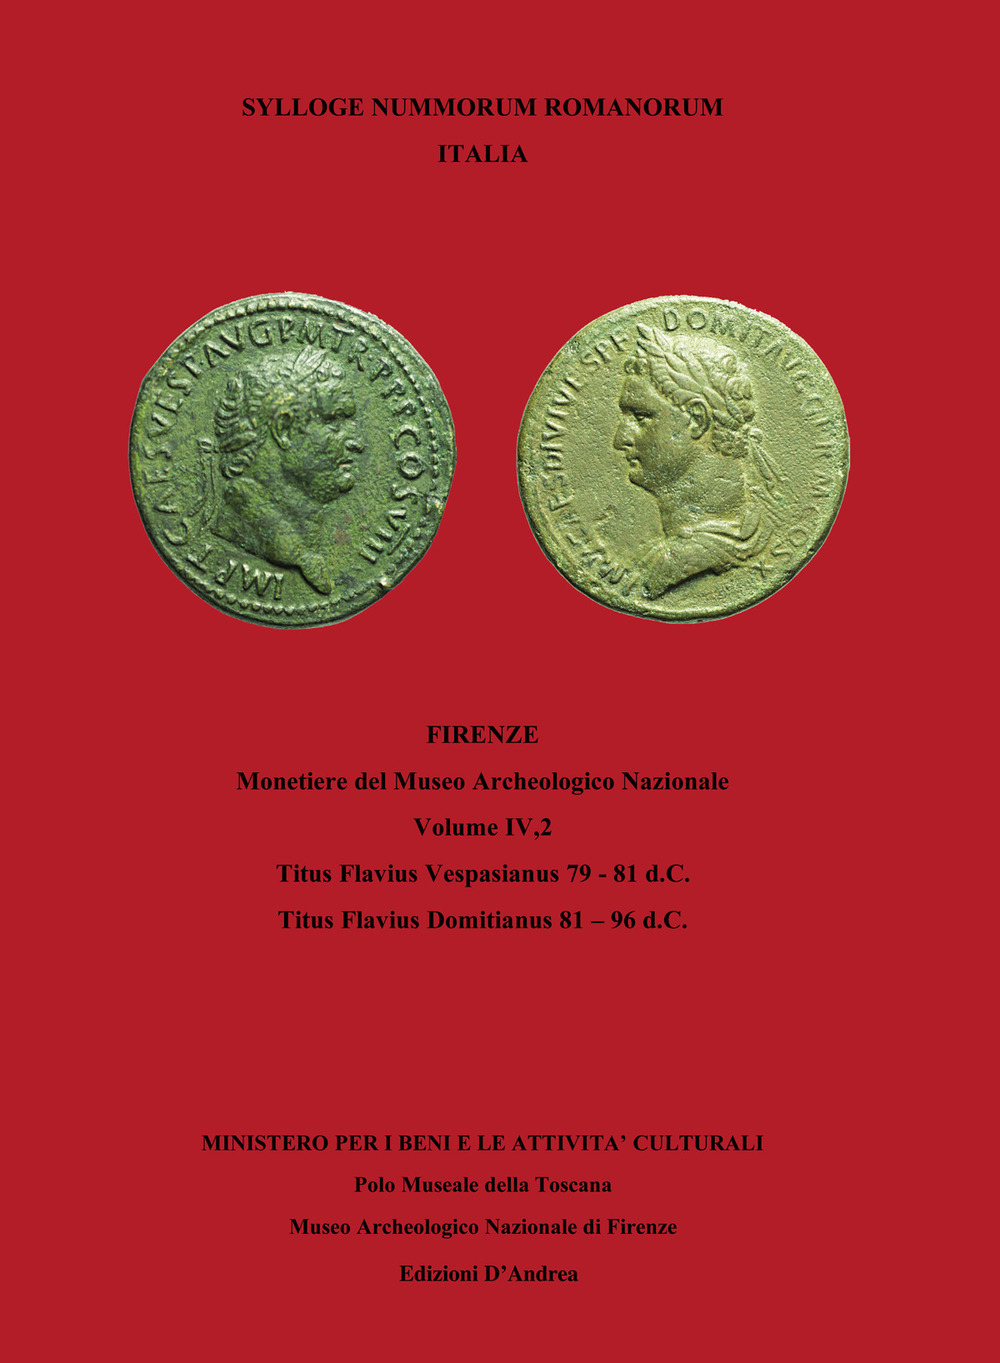 Libri Stefano Bani - Sylloge Nummorum Romanorum Italia Vol 04/2 NUOVO SIGILLATO, EDIZIONE DEL 15/04/2020 SUBITO DISPONIBILE